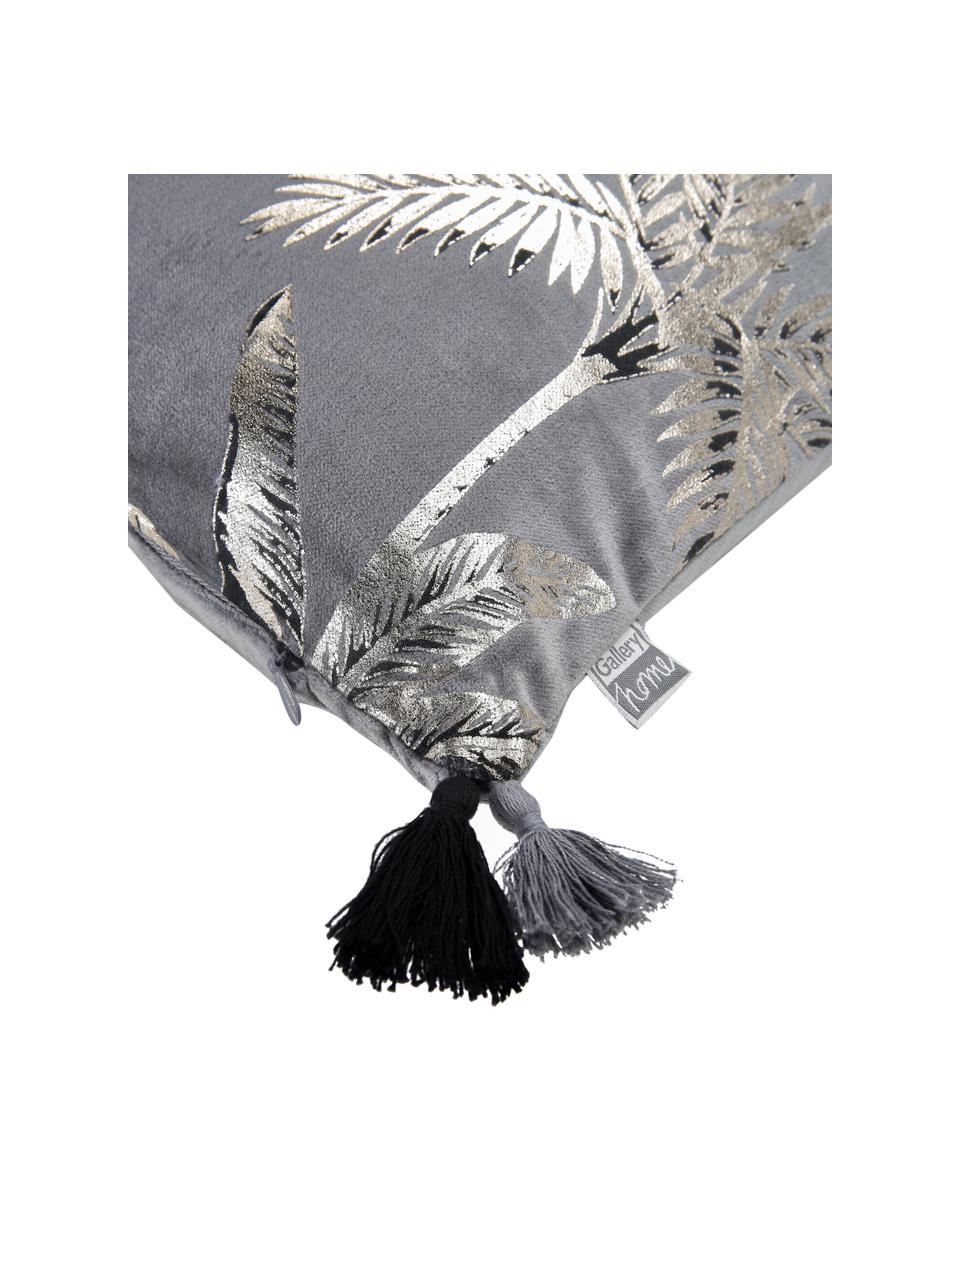 Samt-Kissen Palm mit glänzendem Print, mit Inlett, Bezug: 100% Baumwollsamt, Grau, 30 x 50 cm